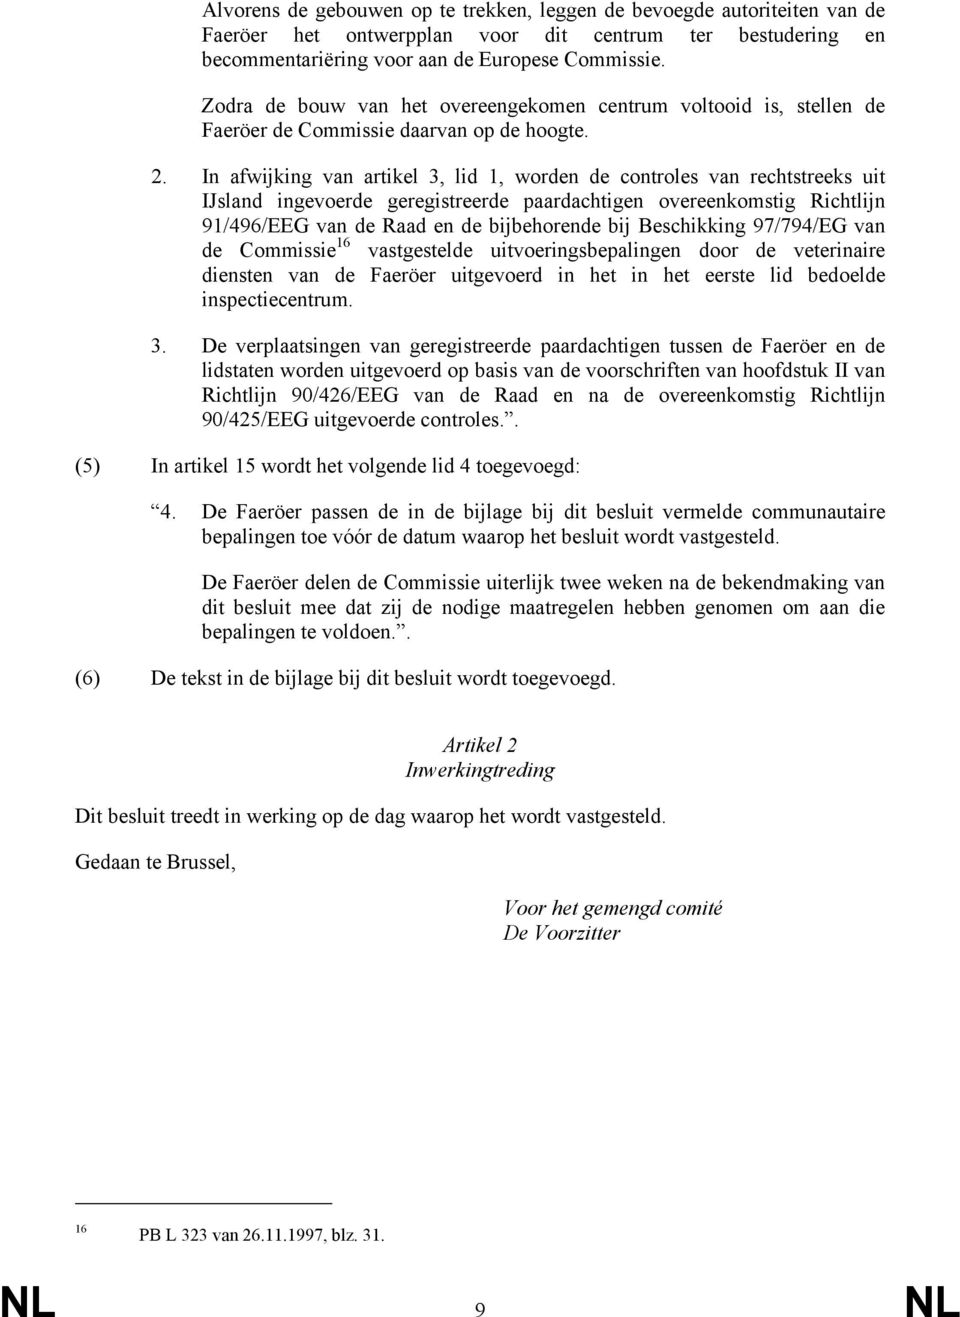 In afwijking van artikel 3, lid 1, worden de controles van rechtstreeks uit IJsland ingevoerde geregistreerde paardachtigen overeenkomstig Richtlijn 91/496/EEG van de Raad en de bijbehorende bij